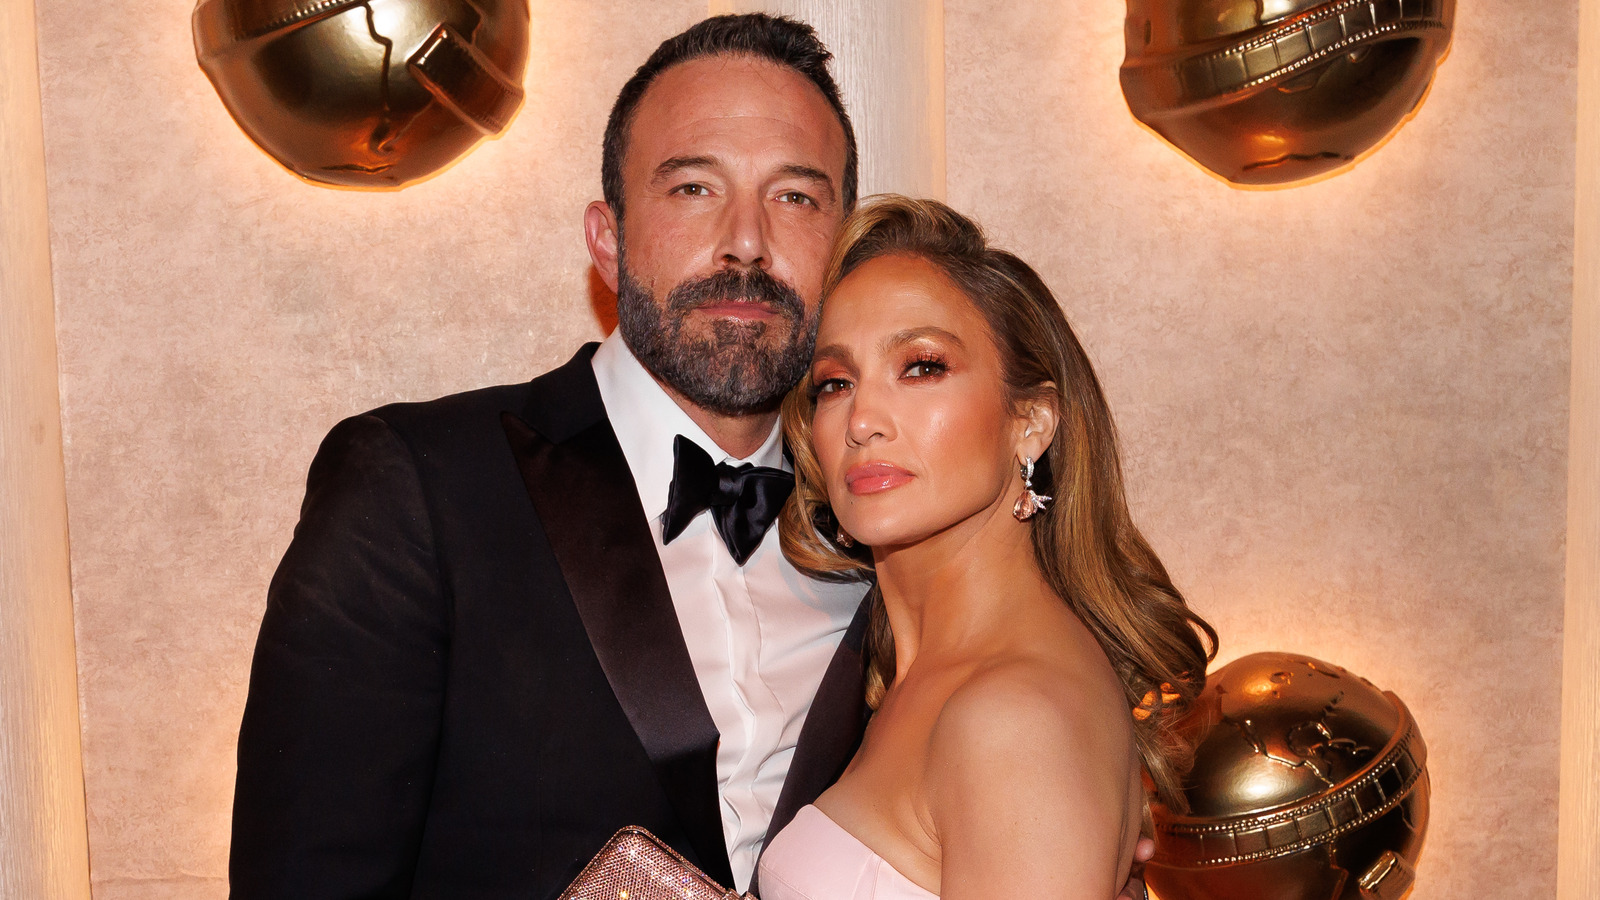 Por qué la cancelación de la boda de J.Lo y Ben Affleck en 2003 dañó su relación